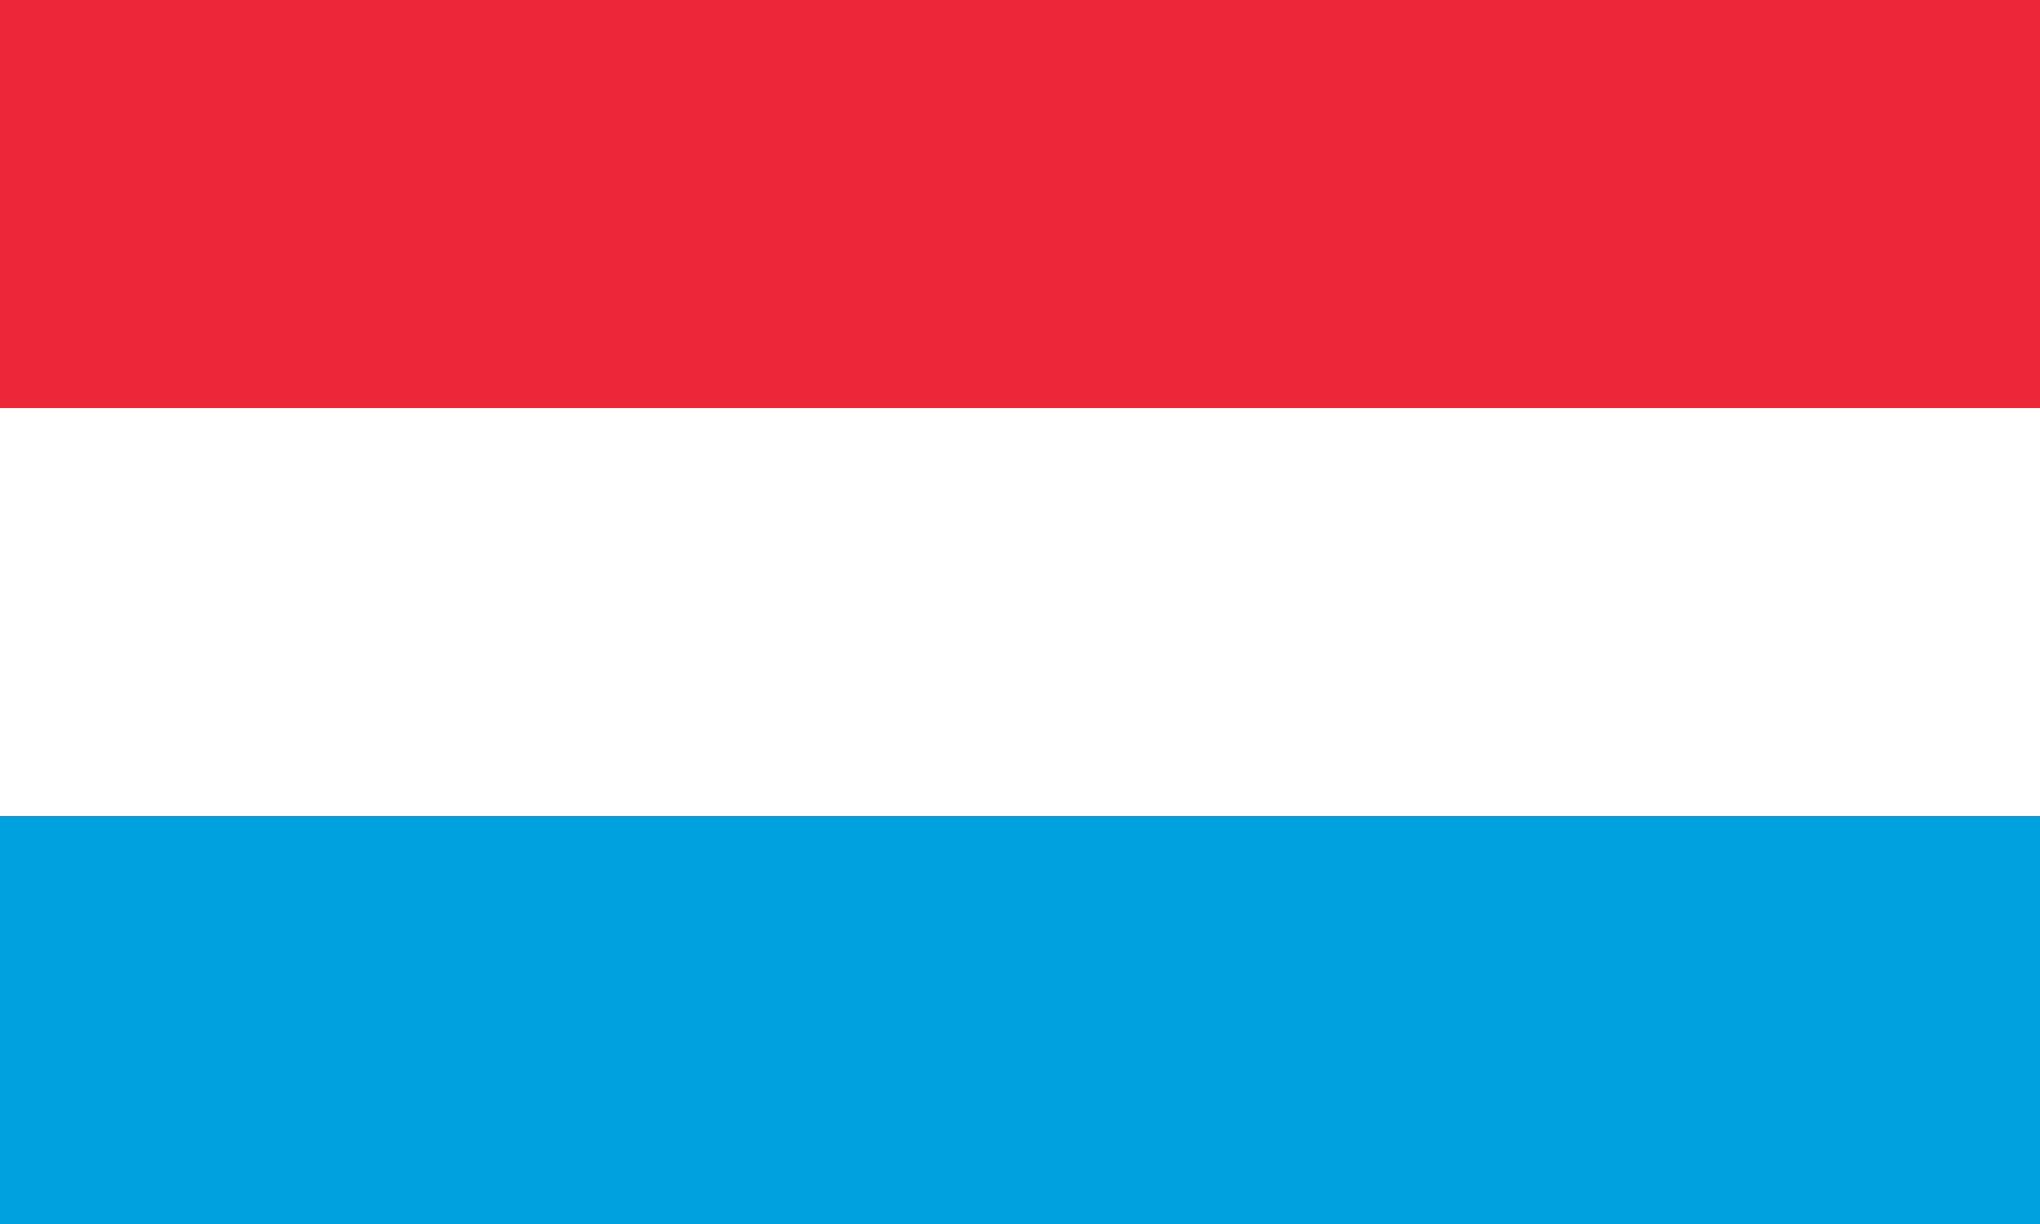 Bild der Staatsflagge Luxemburg - mit einer Auflösung von 2040x1224 - Europa